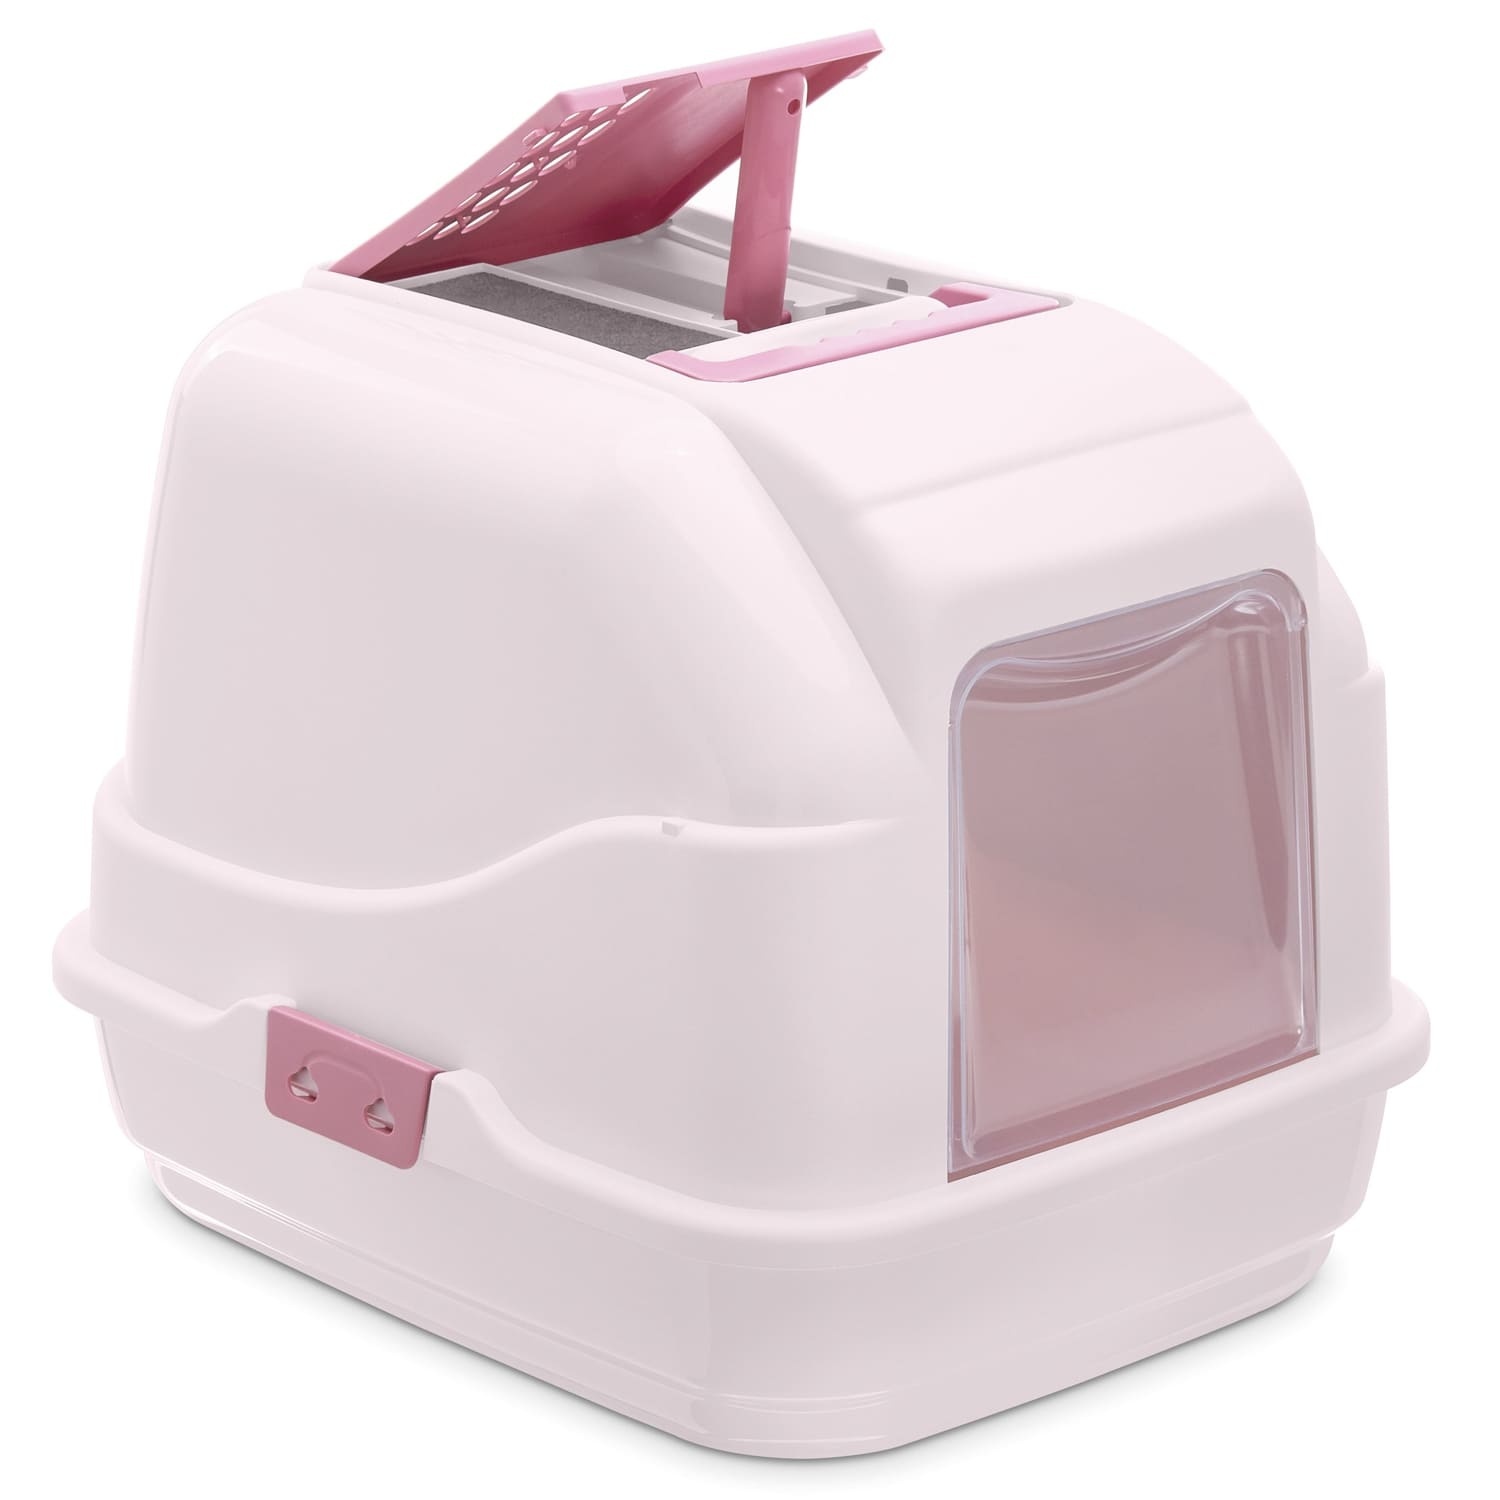 IMAC IMAC био-туалет для кошек, нежно-розовый (1,7 кг)